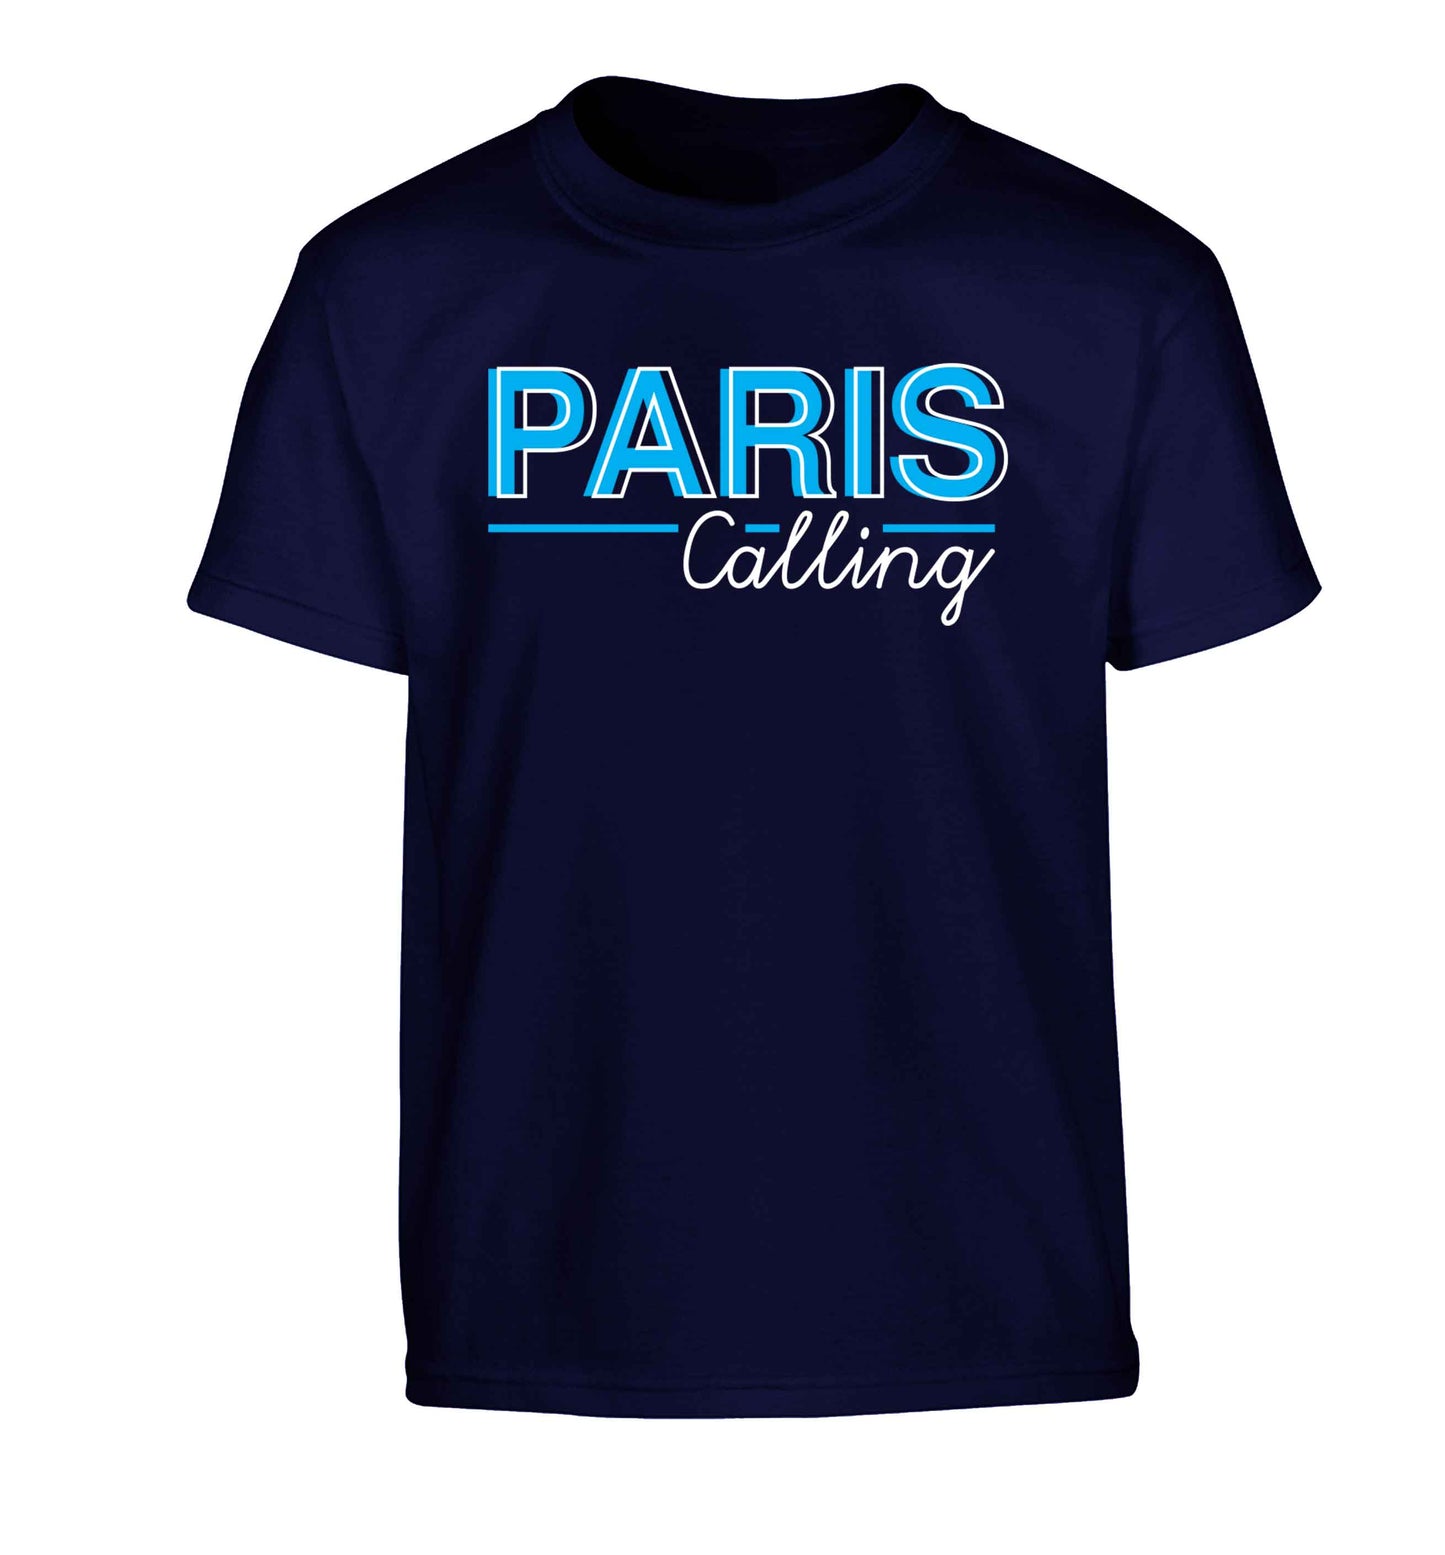 Paris calling Children's navy Tshirt 12-13 Years